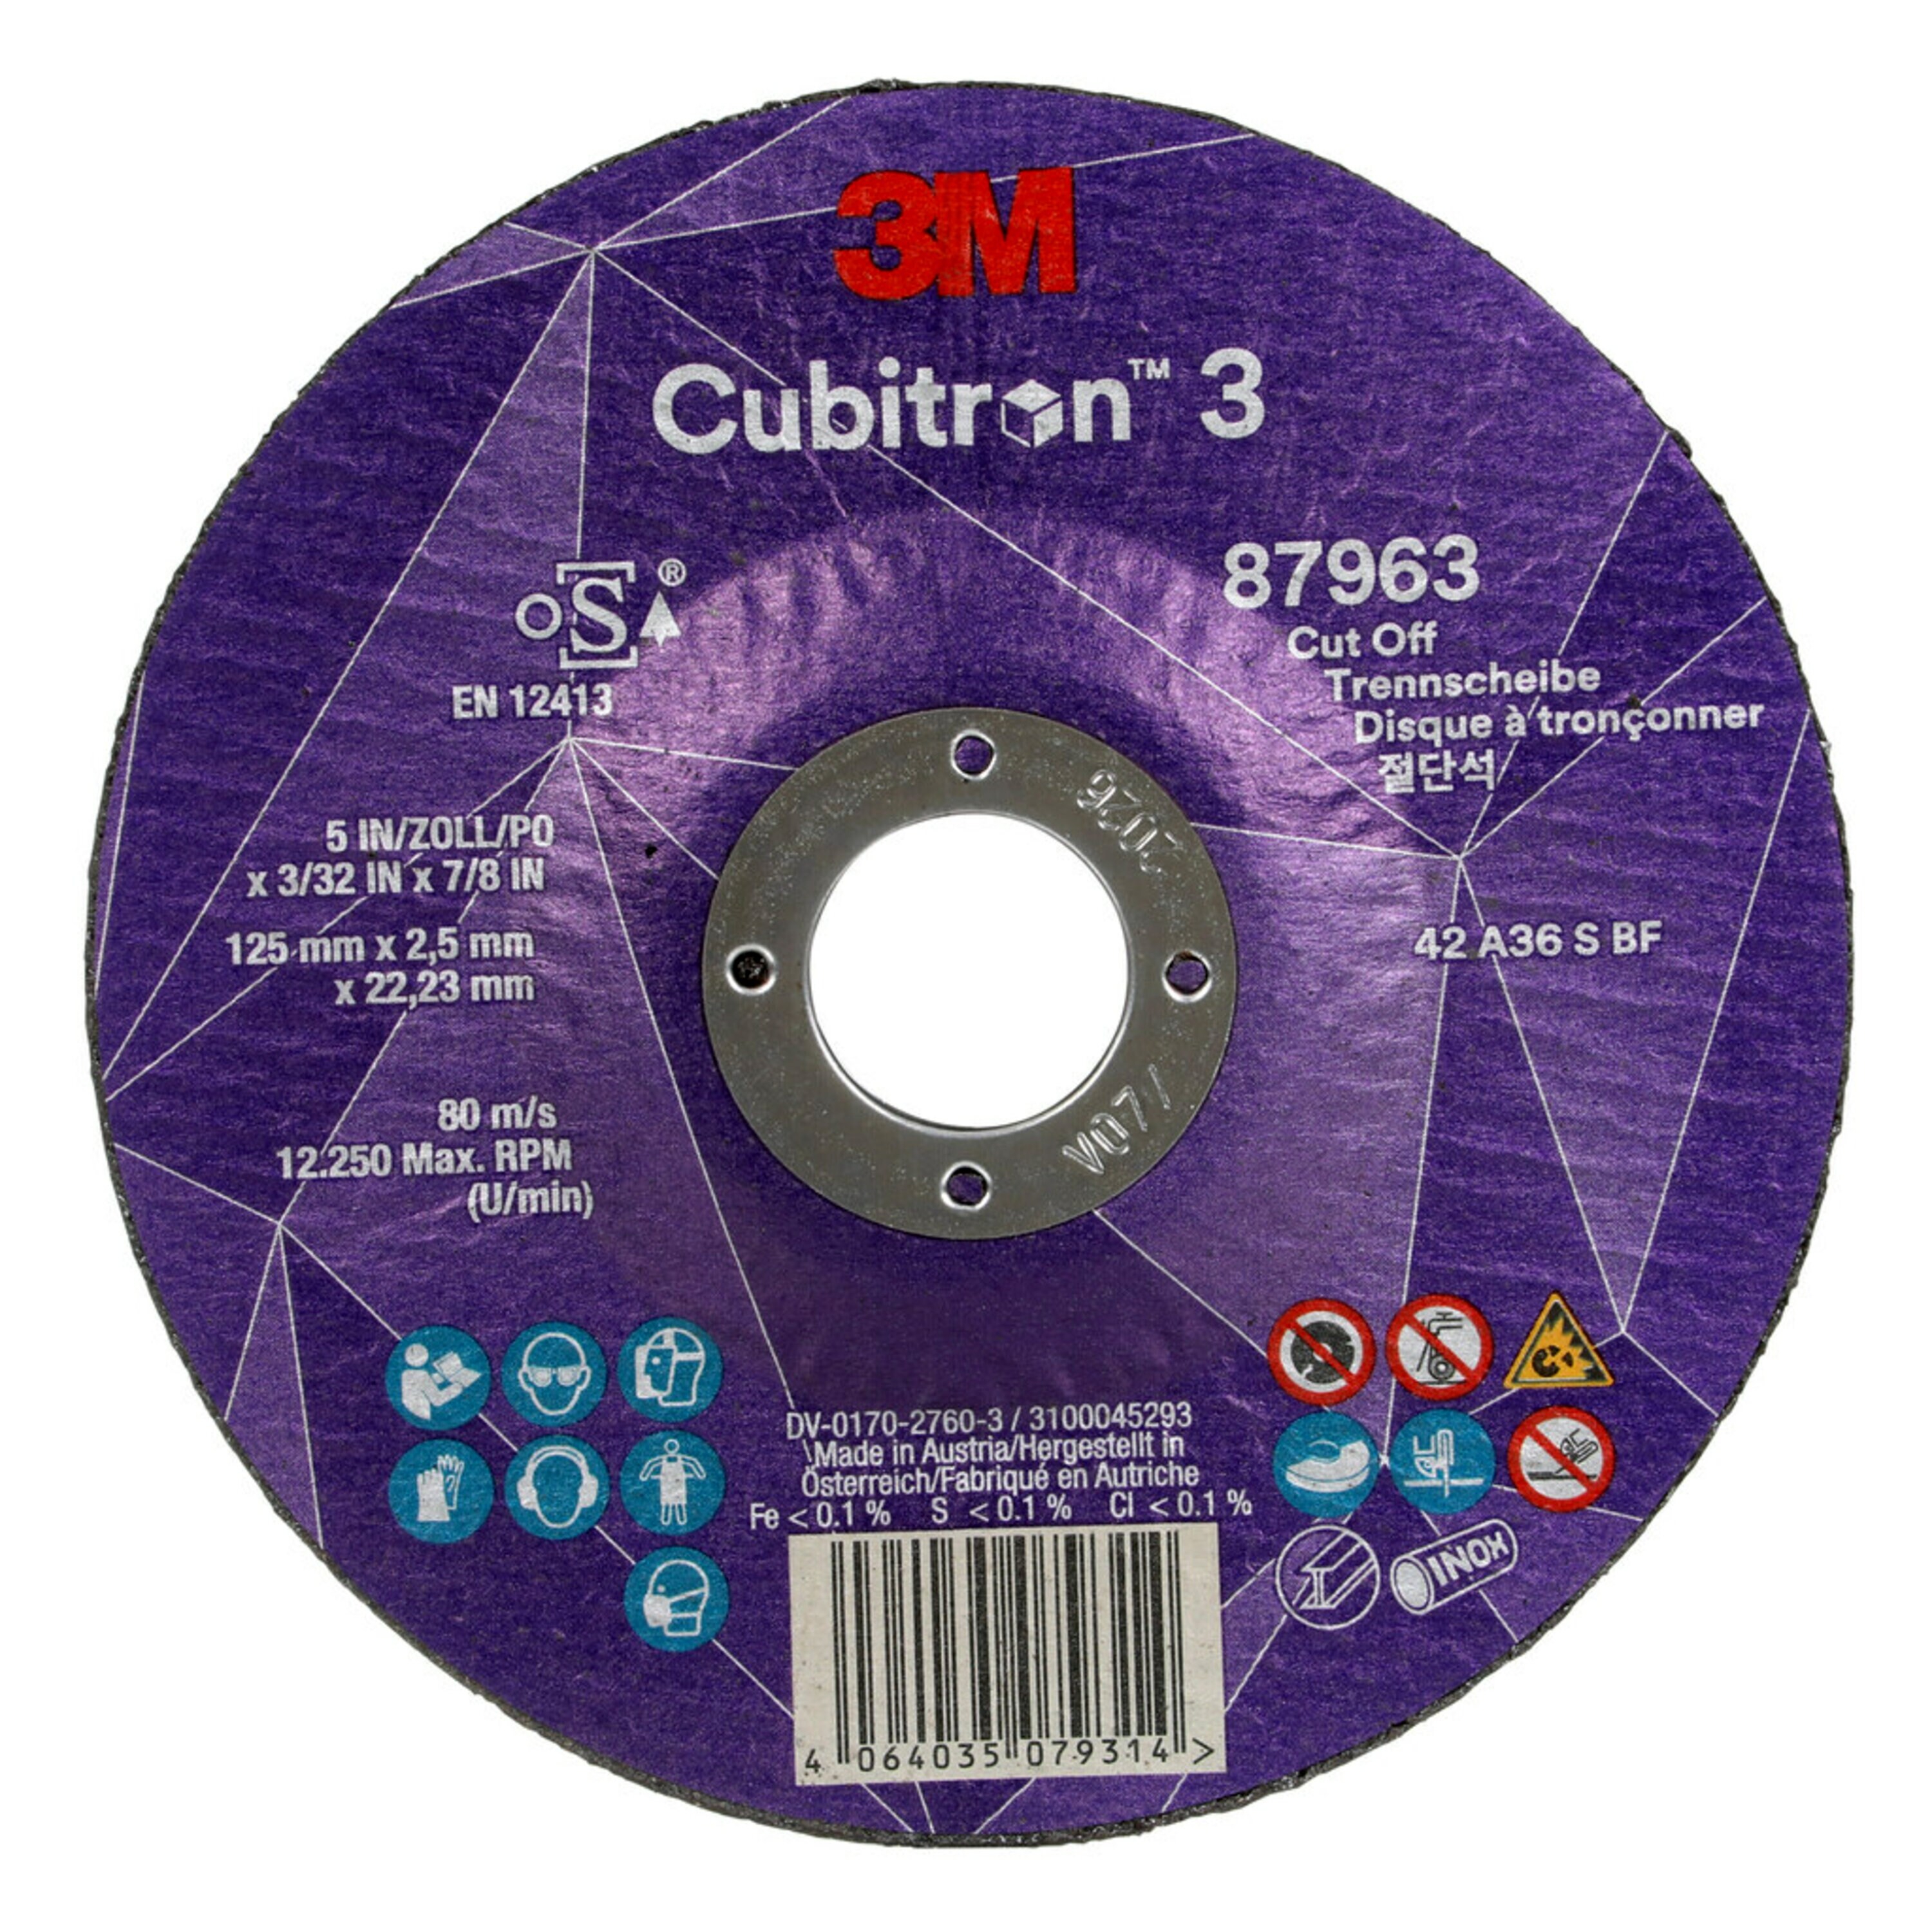 3M Cubitron 3 disque à tronçonner, 125 mm, 2,5 mm, 22,23 mm, 36 , type 42 #87963